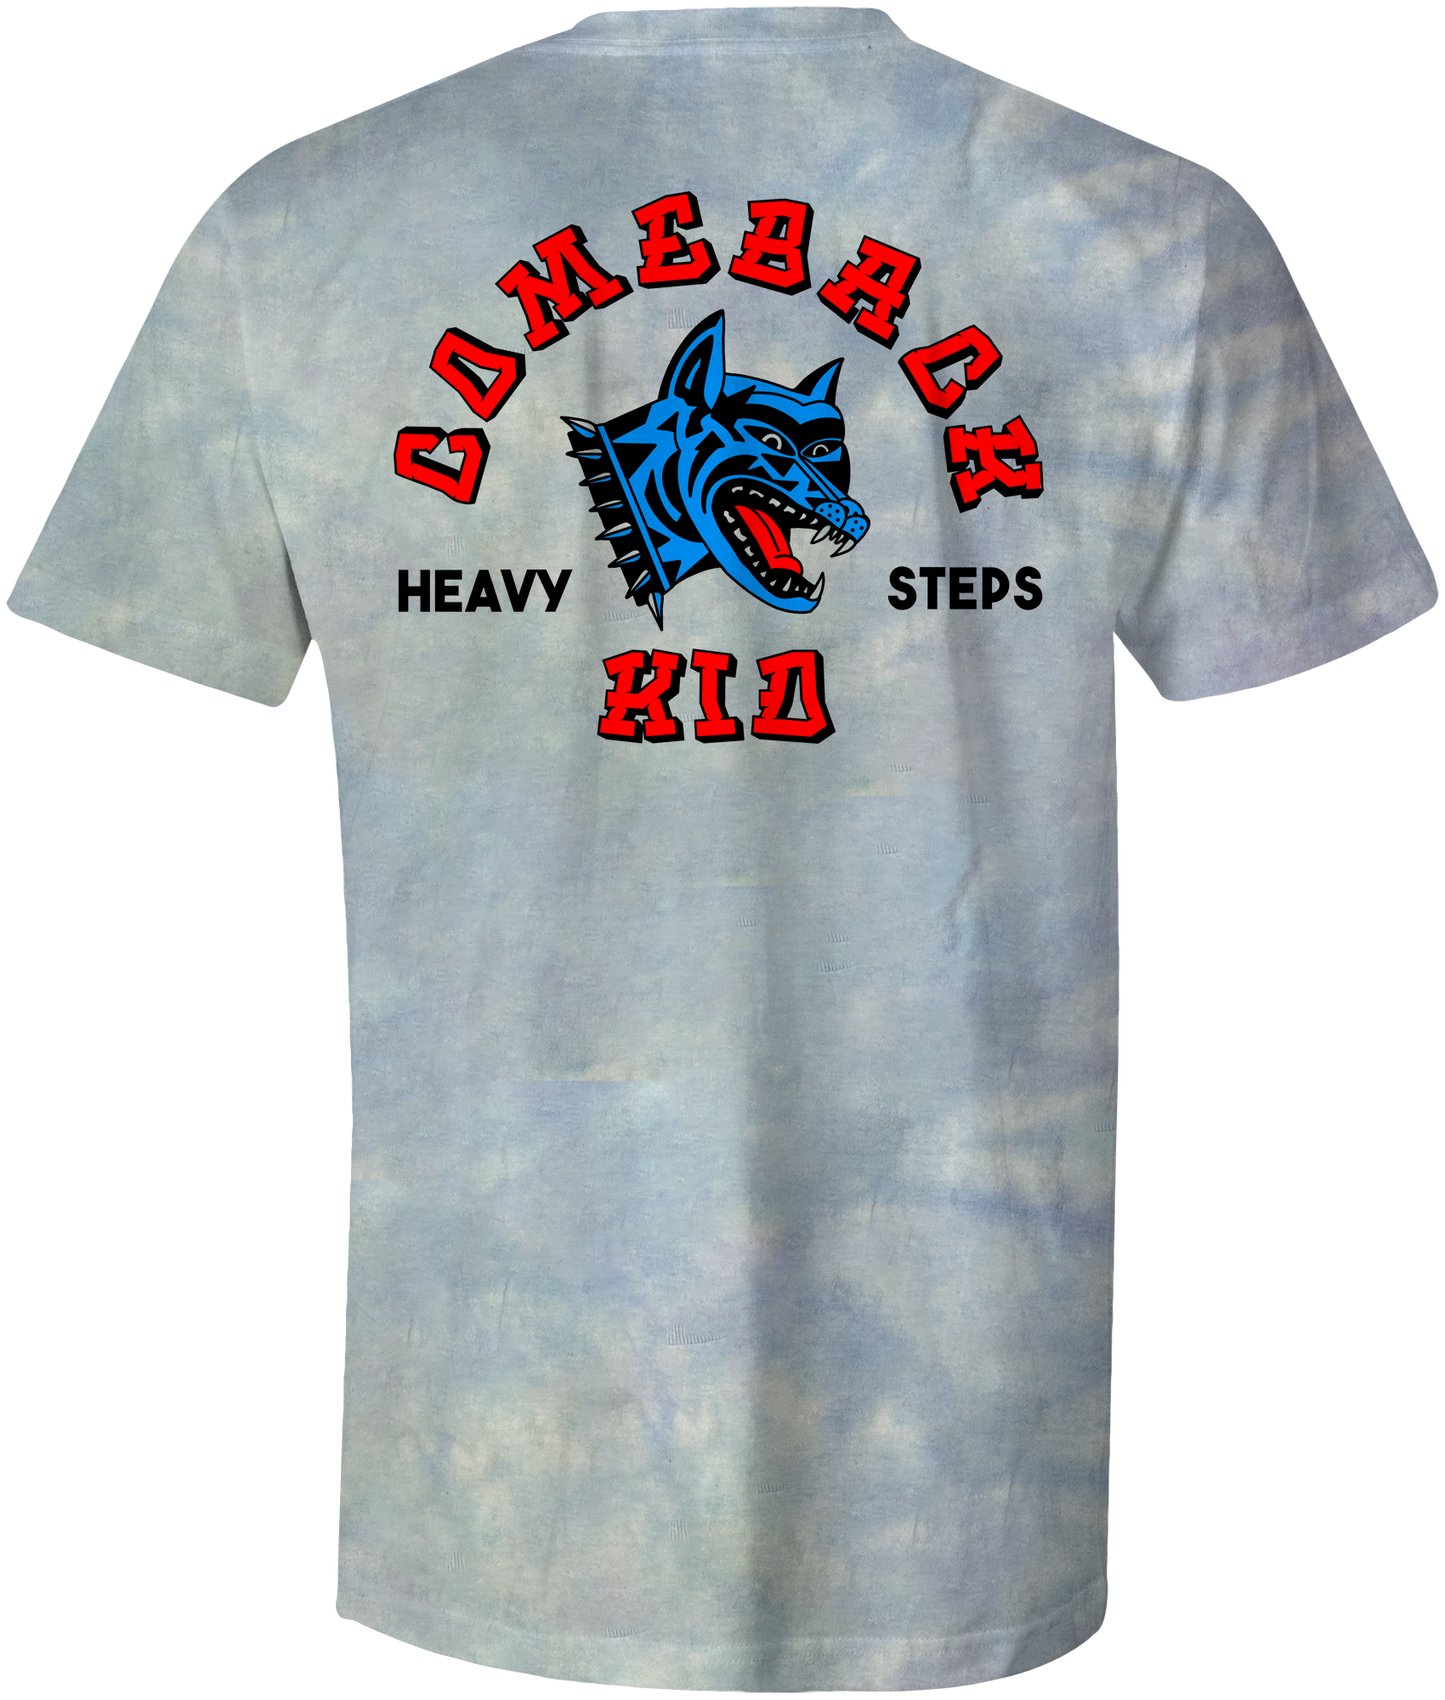 Heavy Steps Tie-Dye T-Shirt (Blue)